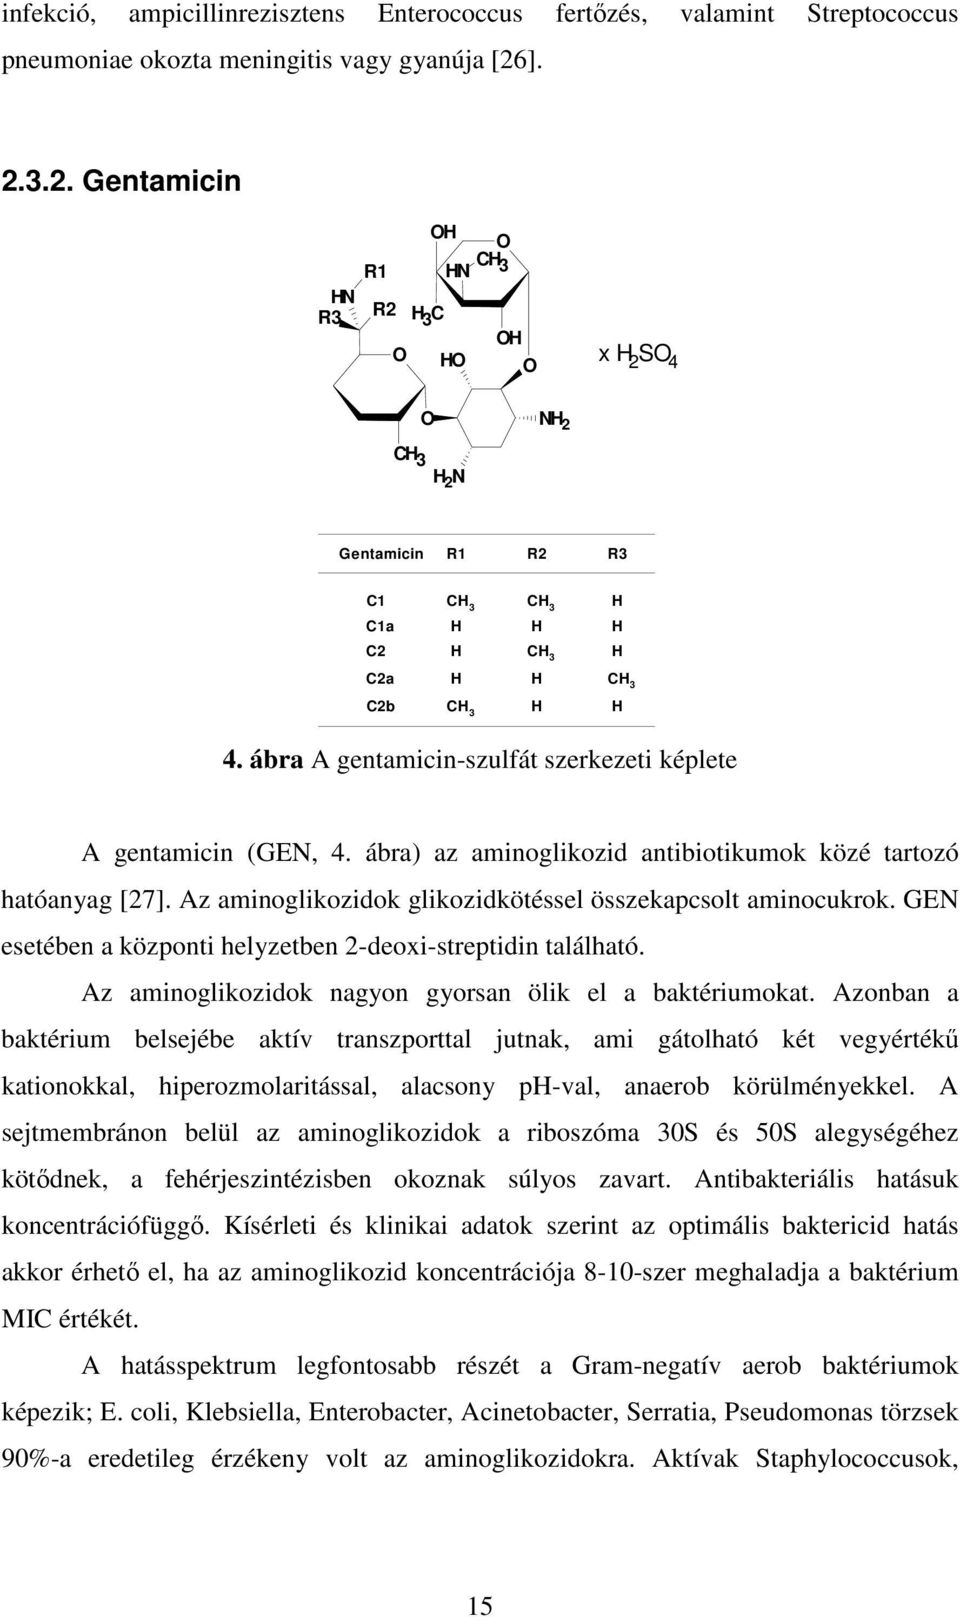 ábra A gentamicin-szulfát szerkezeti képlete A gentamicin (GEN, 4. ábra) az aminoglikozid antibiotikumok közé tartozó hatóanyag [27]. Az aminoglikozidok glikozidkötéssel összekapcsolt aminocukrok.